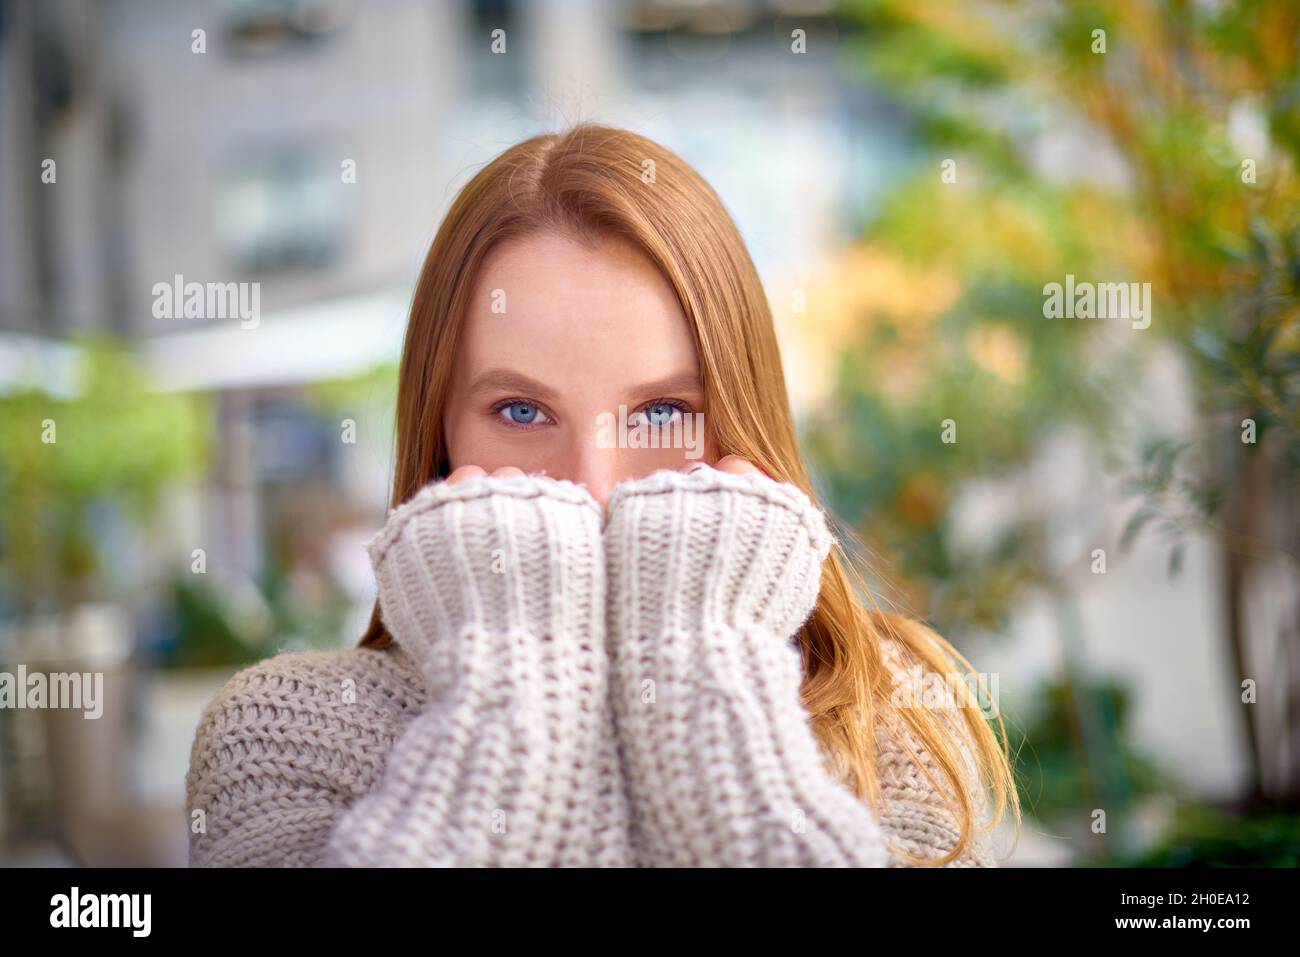 femme aux yeux bleus dans un chandail chaud à grosse maille couvre sa bouche avec les mains Banque D'Images